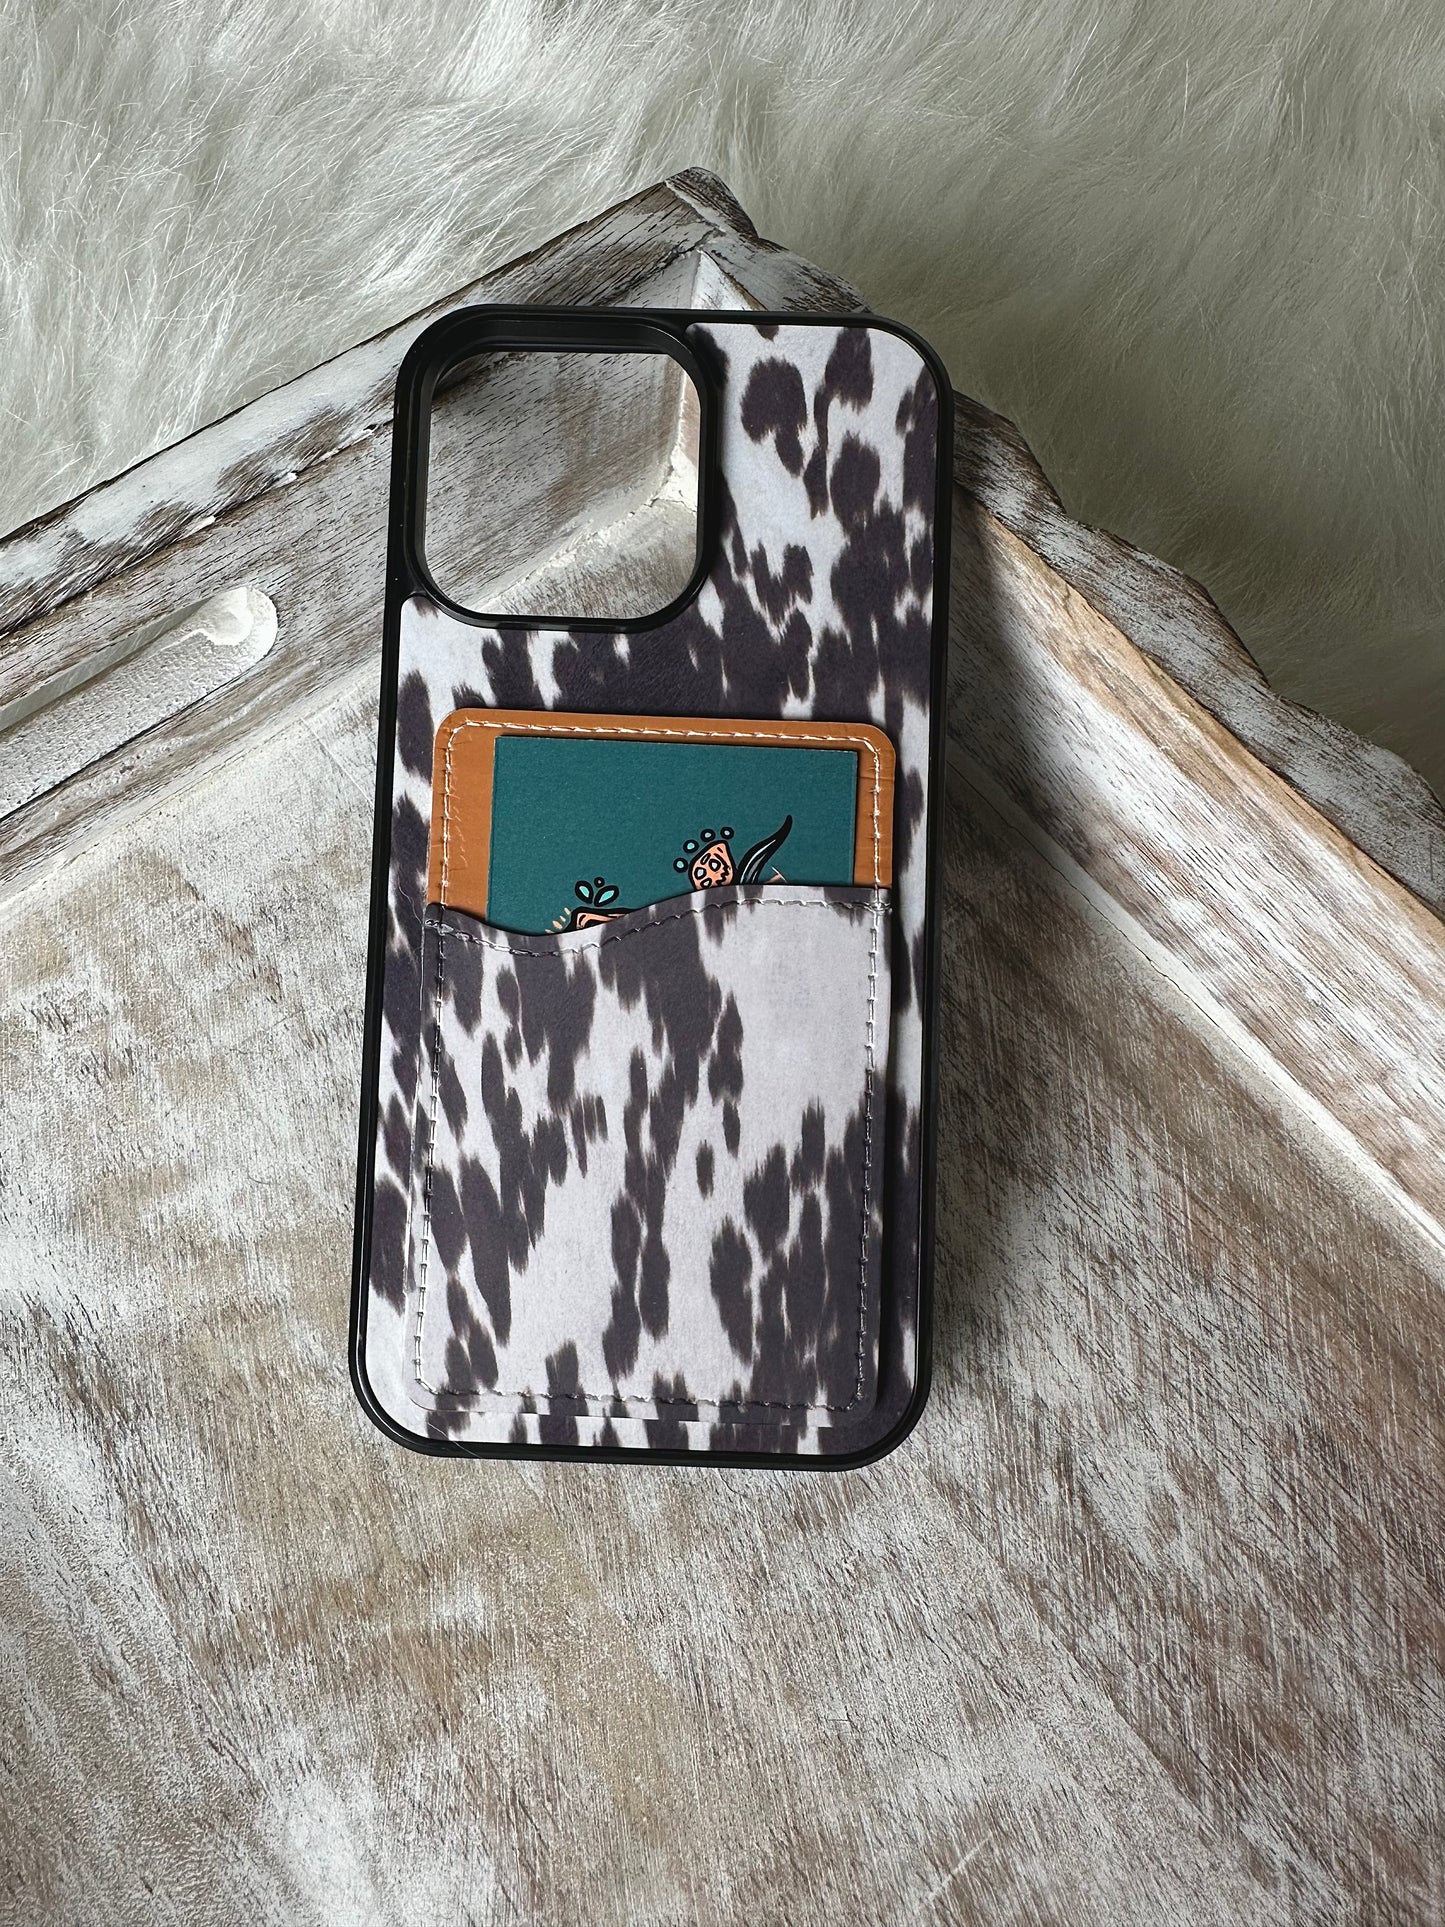 Dark brown cowhide wallet phone case (NOT REAL COWHIDE)